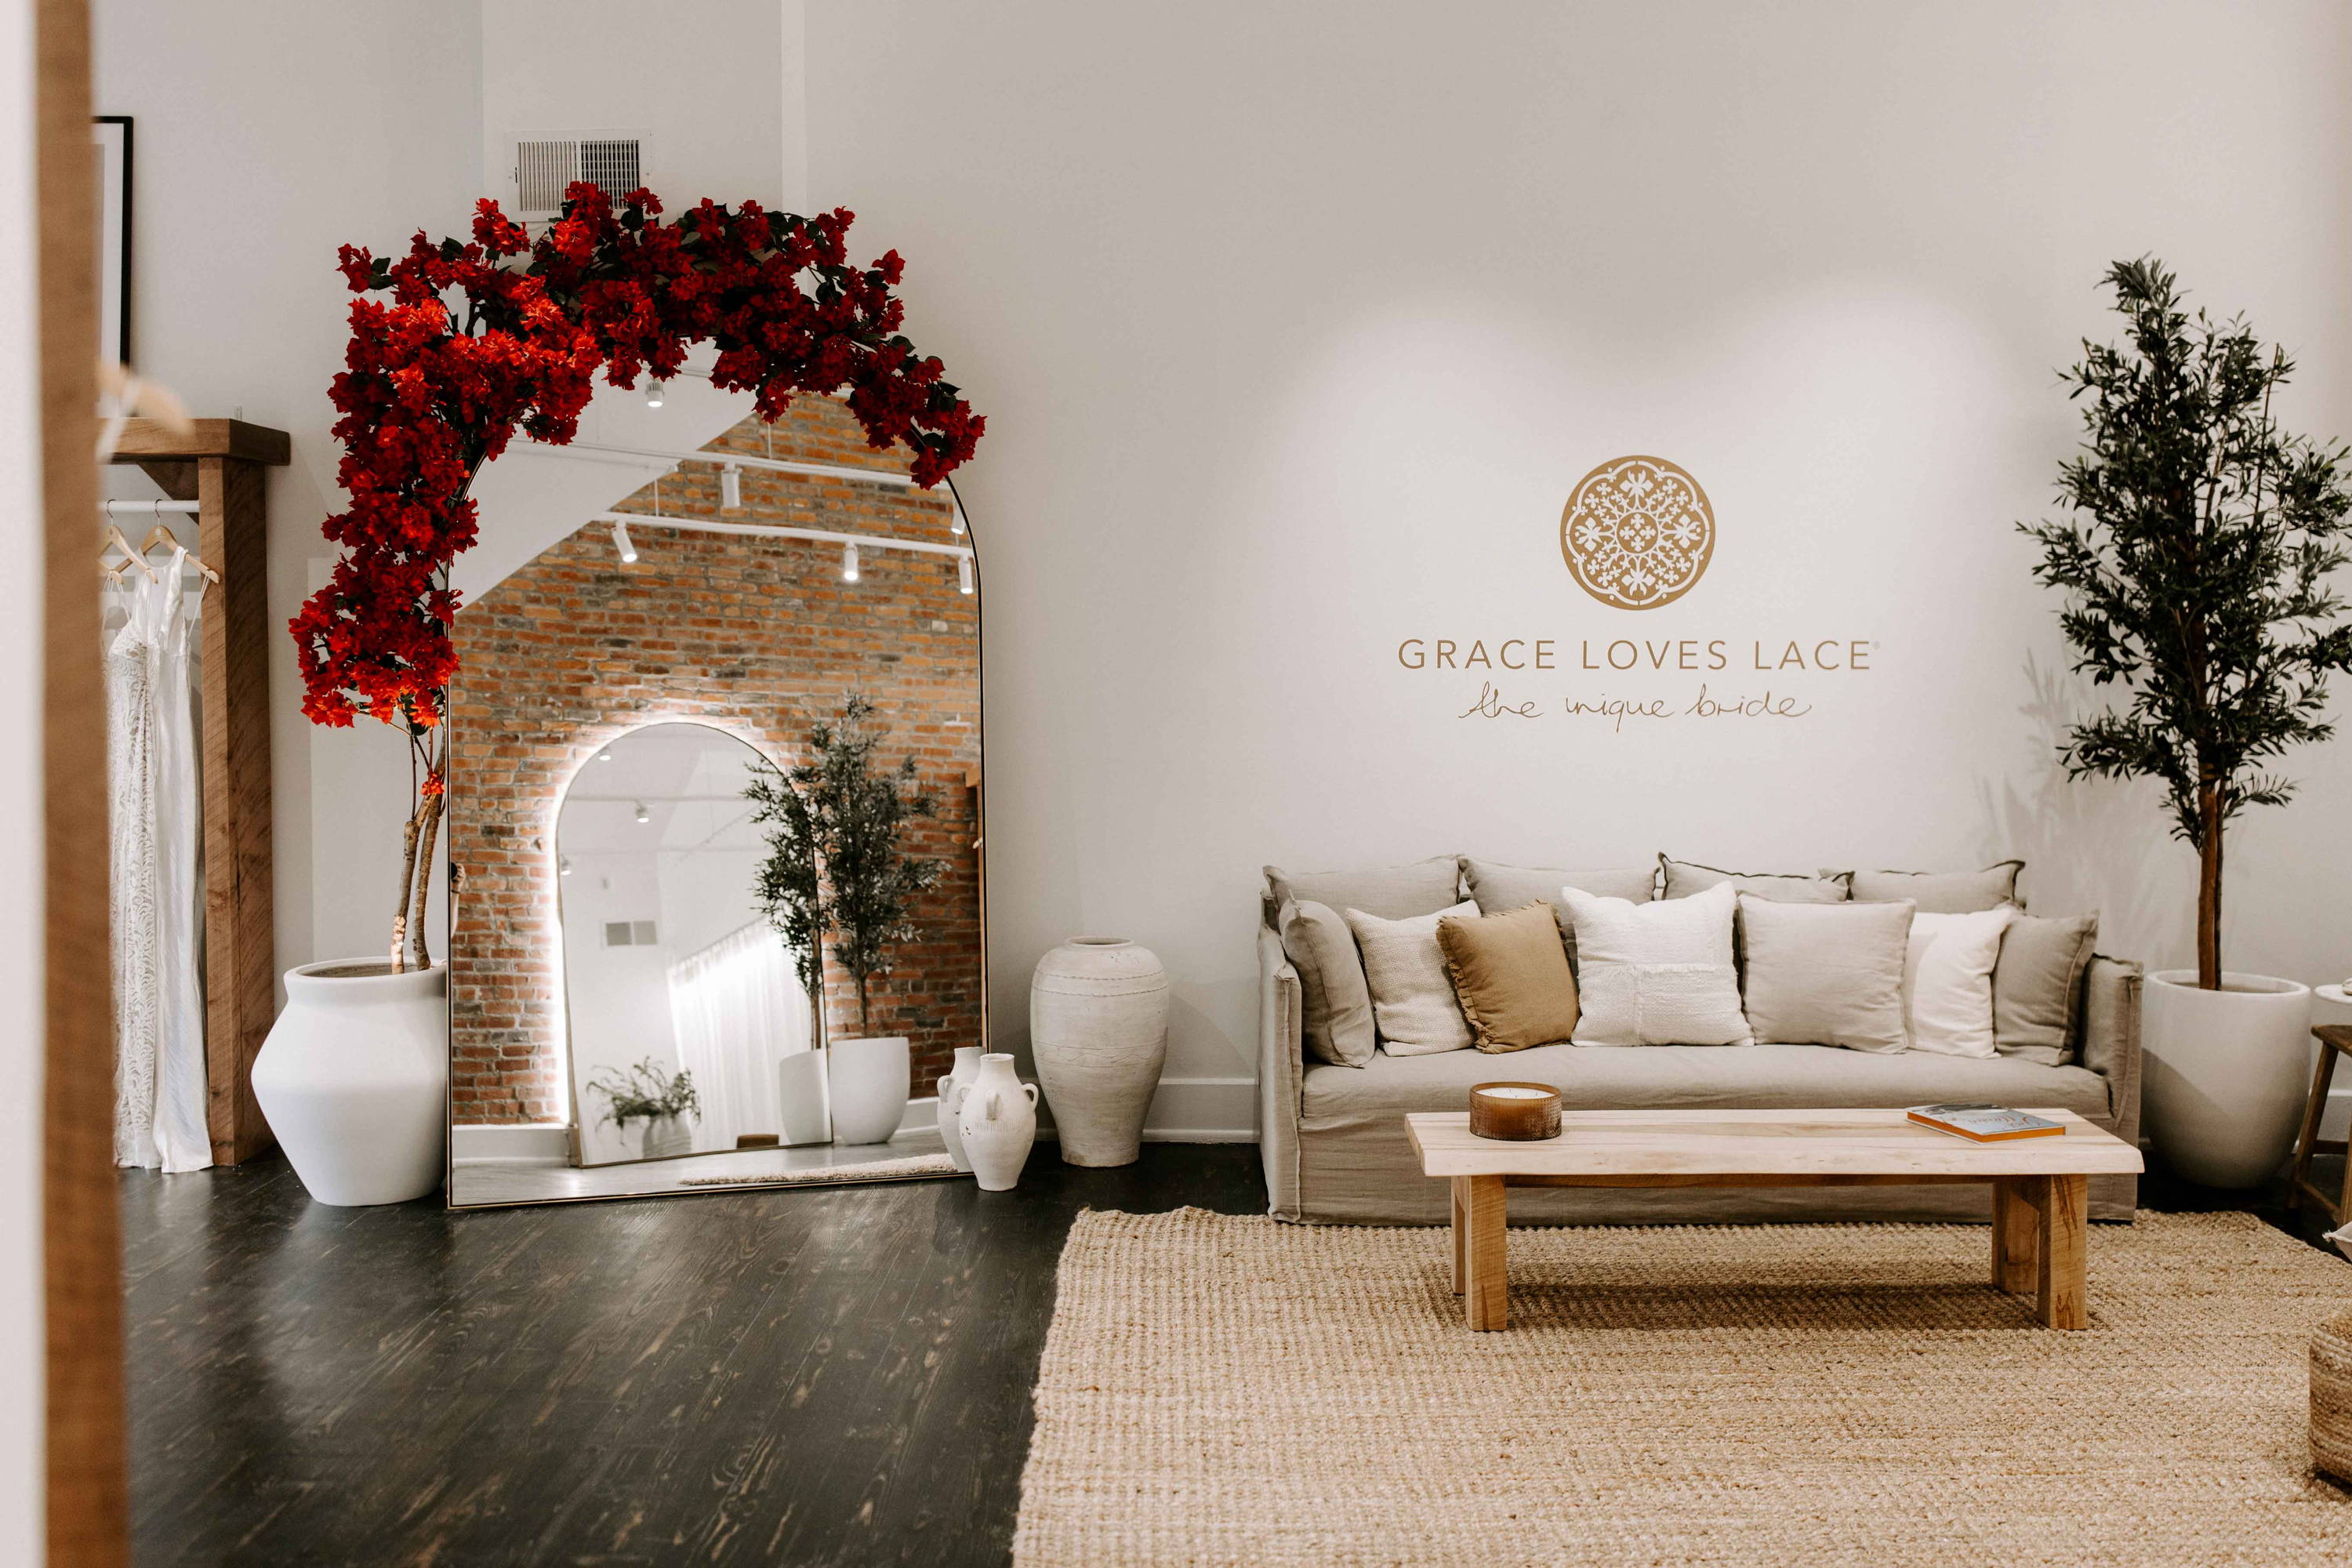 Beigefarbene Couch, rotes Blumenarrangement auf dem Spiegel und Grace Loves Lace-Logo auf weißer Wand